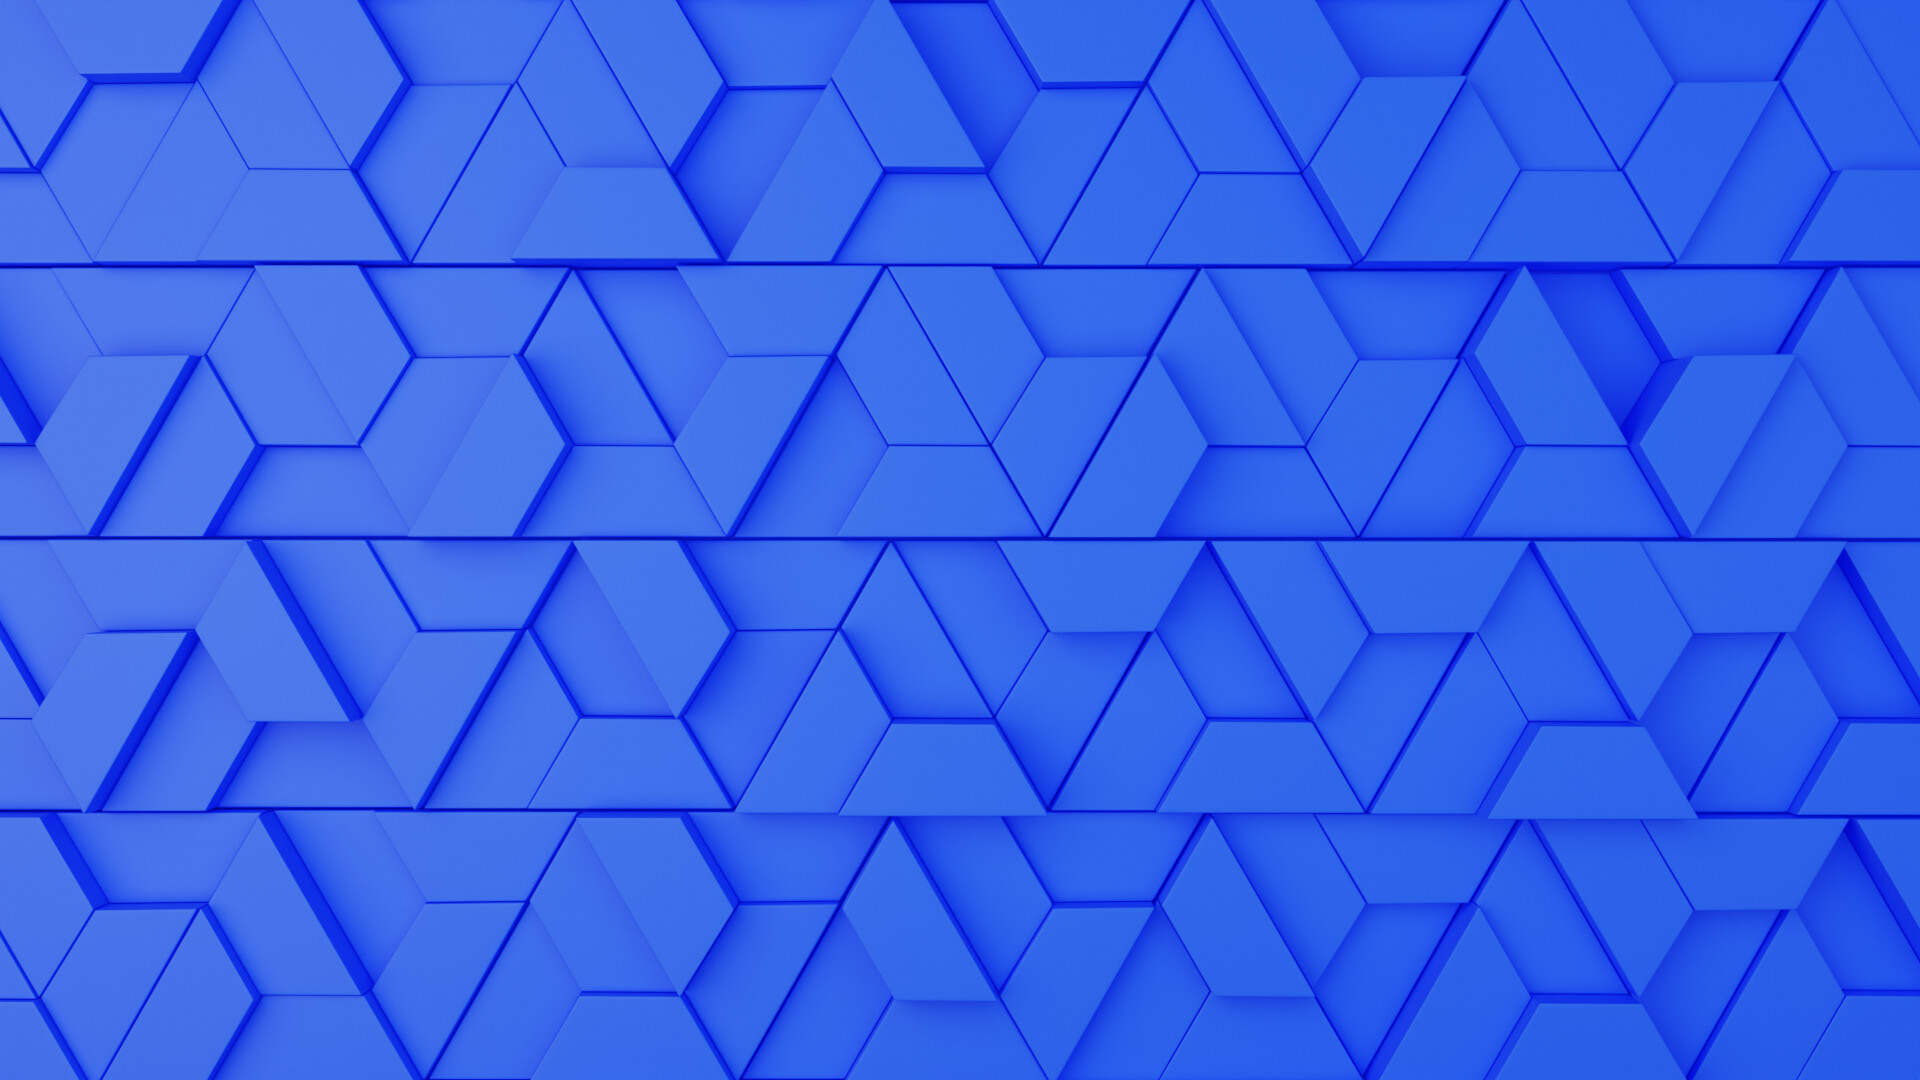 ArtStation - 3d Wallpaper Pattern